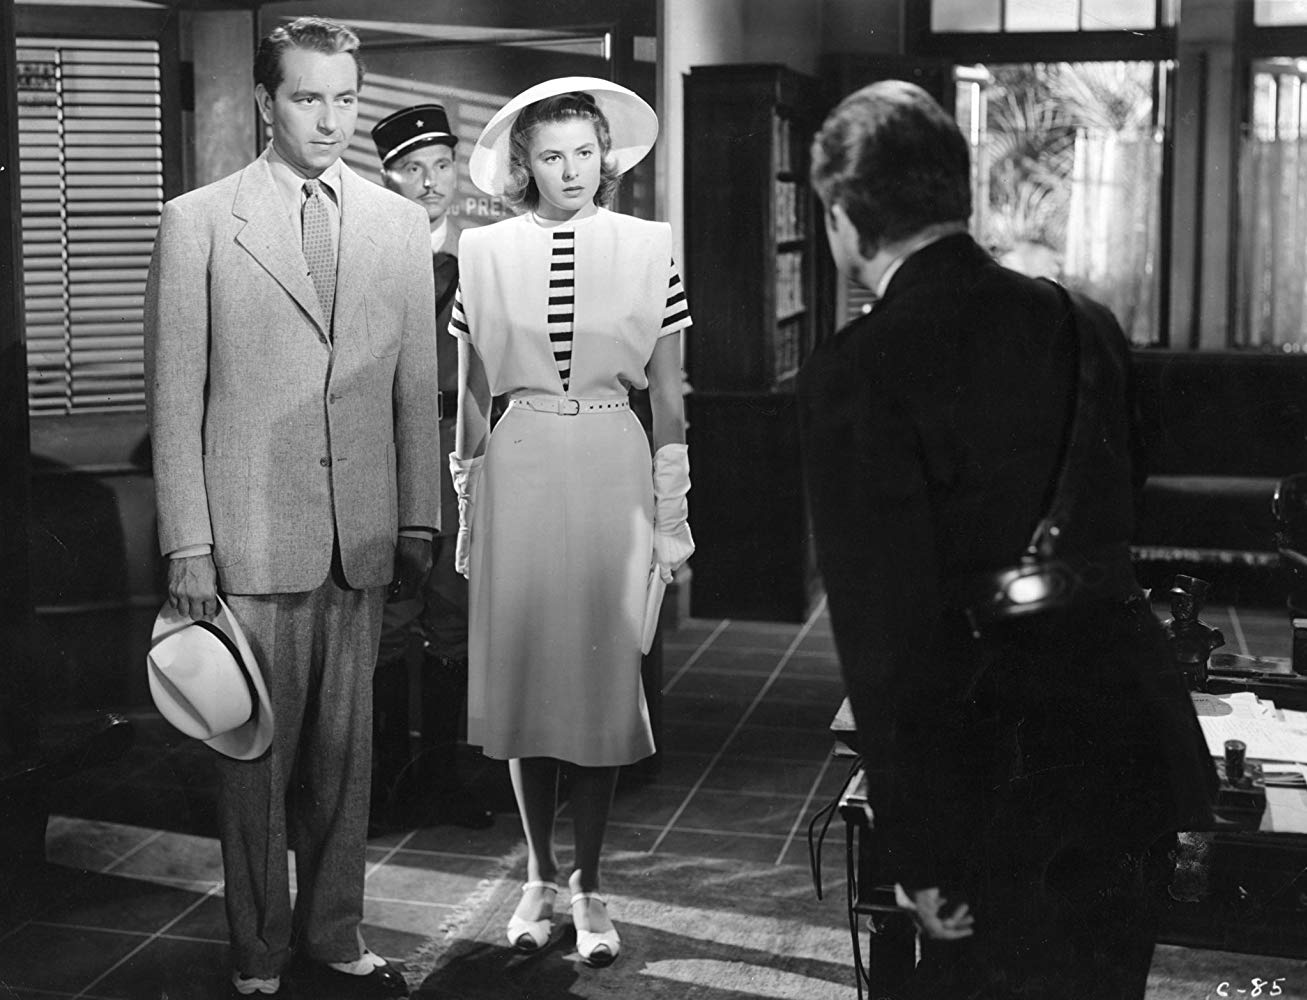 <p>"Kazablanka" (Casablanca)</p><p>"Kazablanka" bir aşk filmi midir yoksa gerilim, trajedi ya da komedi mi? Göçe dair şiirsel bir anlatım mı yoksa Amerika’yı İkinci Dünya Savaşı’na sokmayı amaçlayan bir propaganda filmi mi? Aslında bunların tümüdür "Kazablanka". Yapımı sırasında sorunlar yaşanan ve vaktinde pek tanınmış olmayan Michale Curtiz’in yönettiği filmin sonu bile son ana kadar belli değildi. Bugün ise haklı olarak mükemmelliği yakalamış bir film olarak değerlendiriliyor. (Jordan Hoffman, The Guardian)</p>